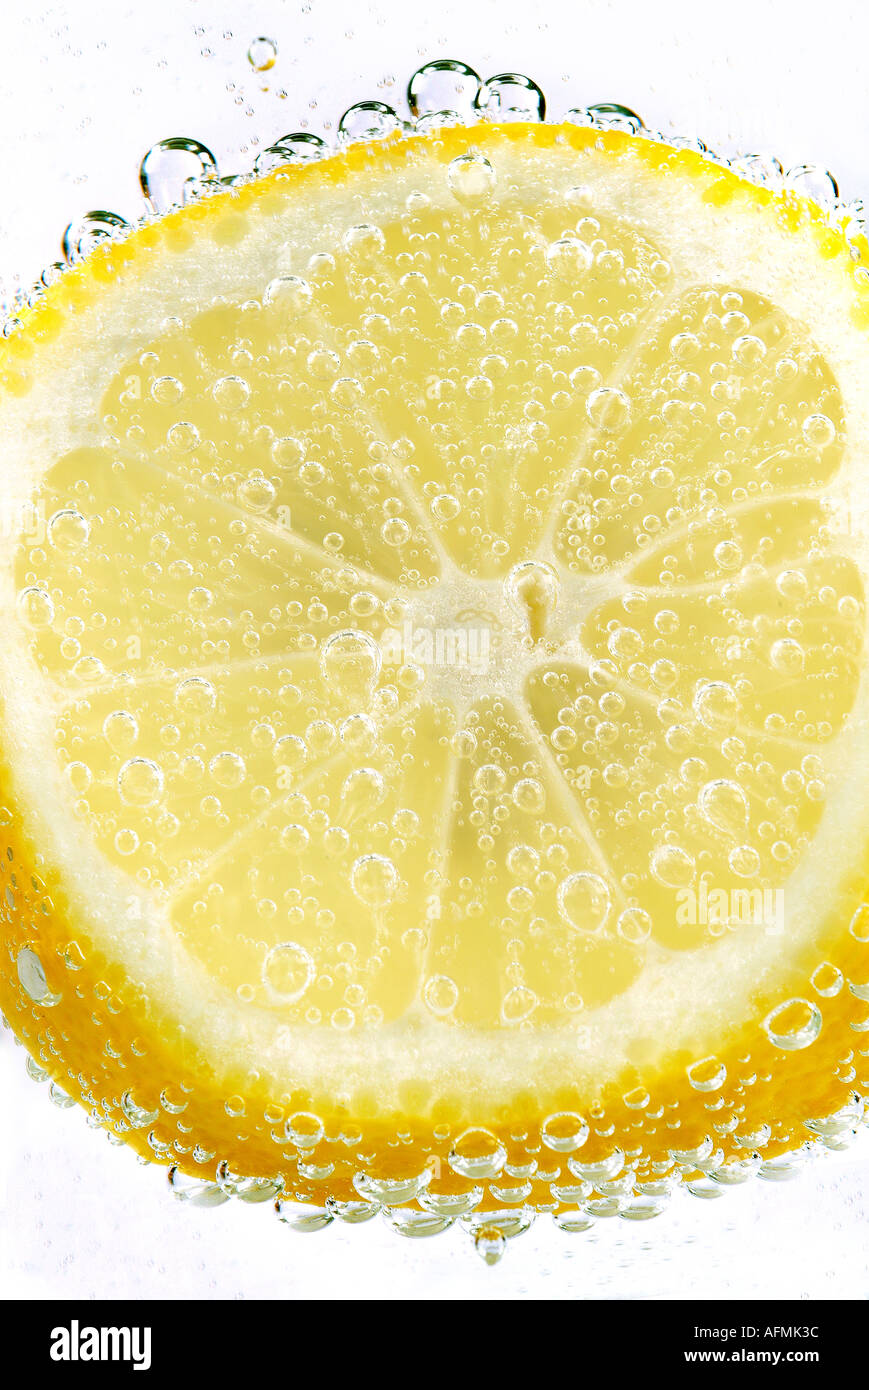 citron Zitrone Stock Photo